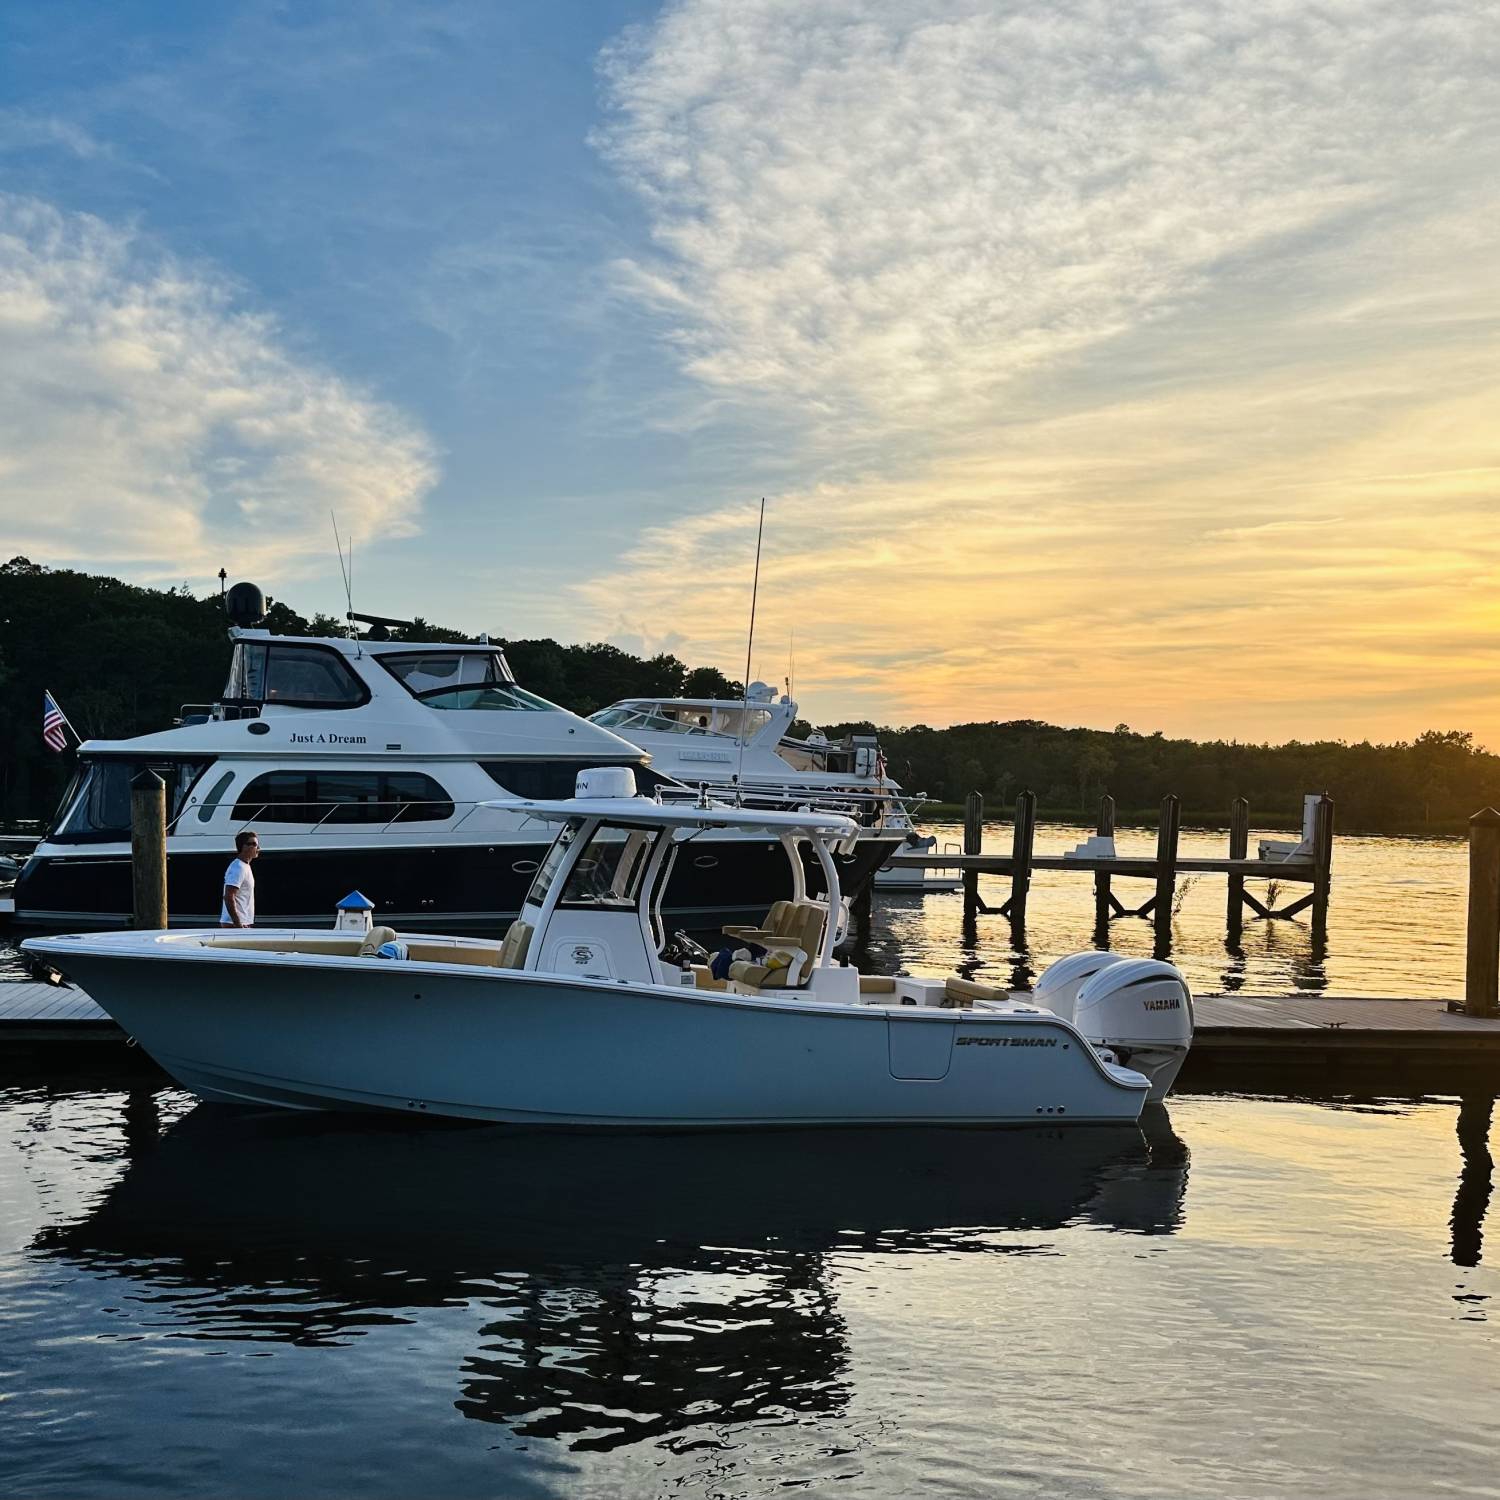 Beautiful sunset with a beautiful boat.